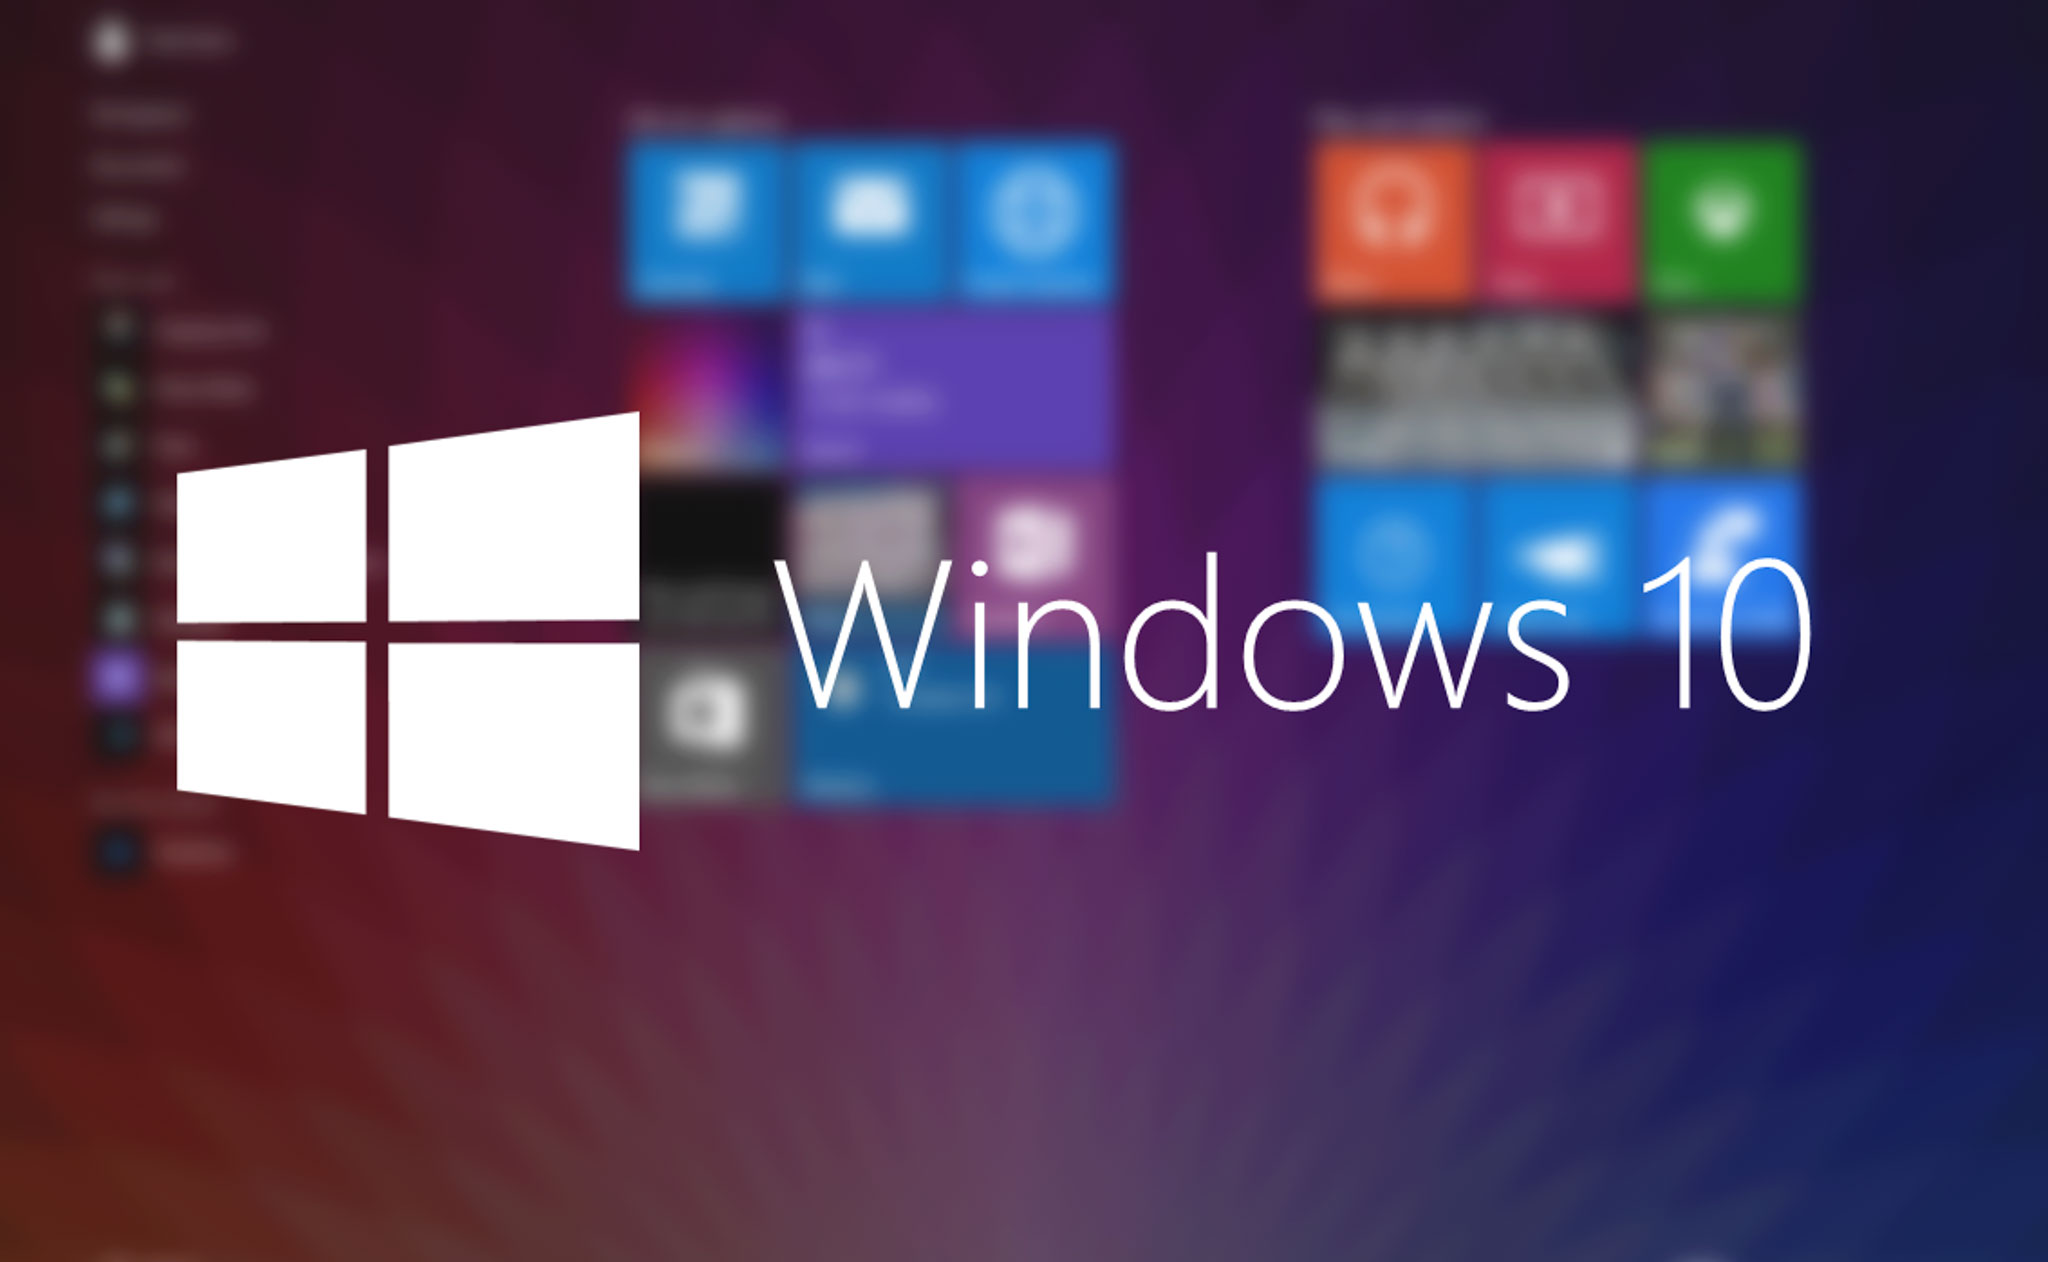 Microsoft xác nhận một phần mã nguồn của Windows 10 đã bị phát tán trên mạng